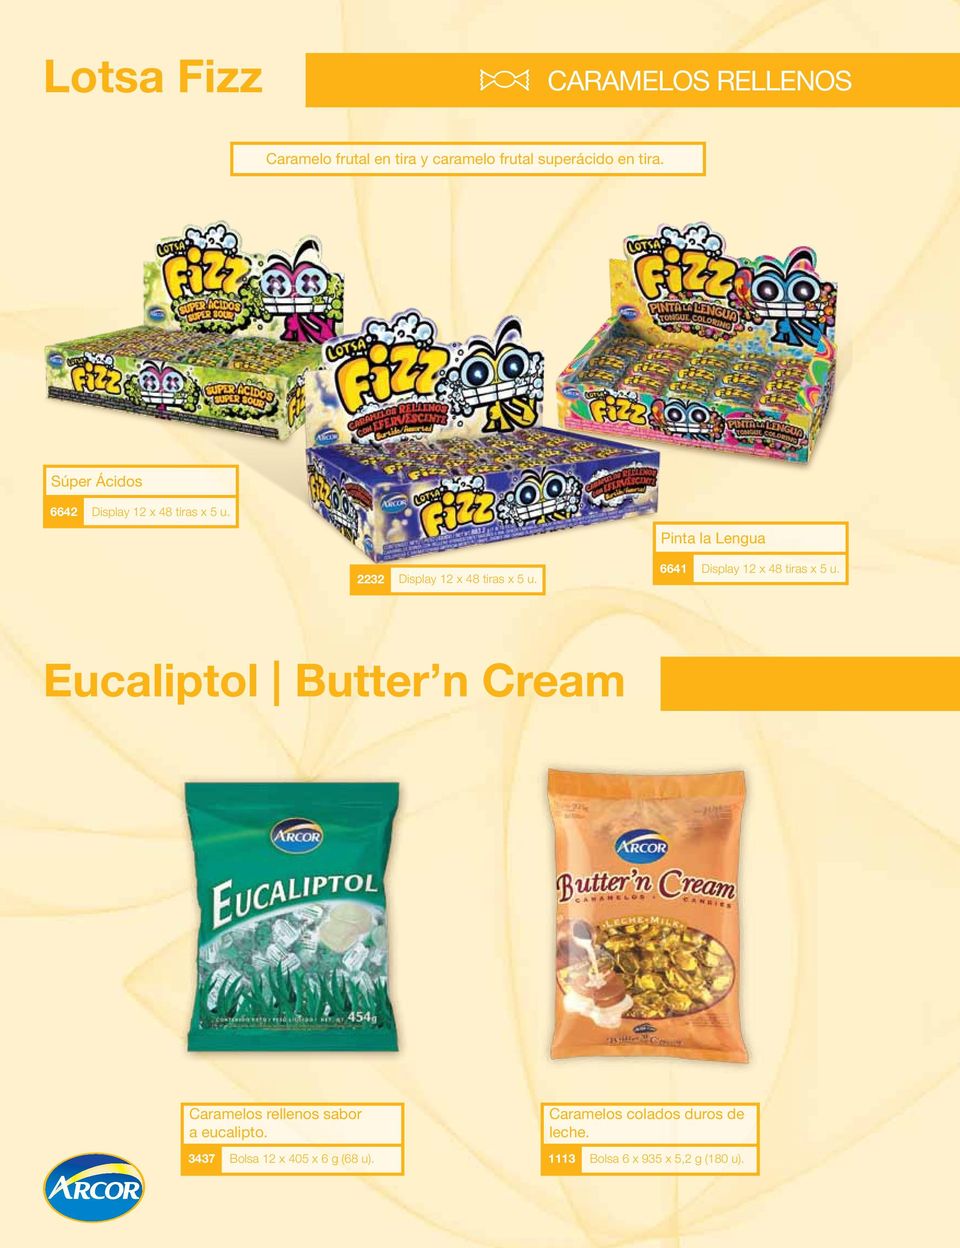 6641 Display 12 x 48 tiras x 5 u. Eucaliptol Butter n Cream Caramelos rellenos sabor a eucalipto.